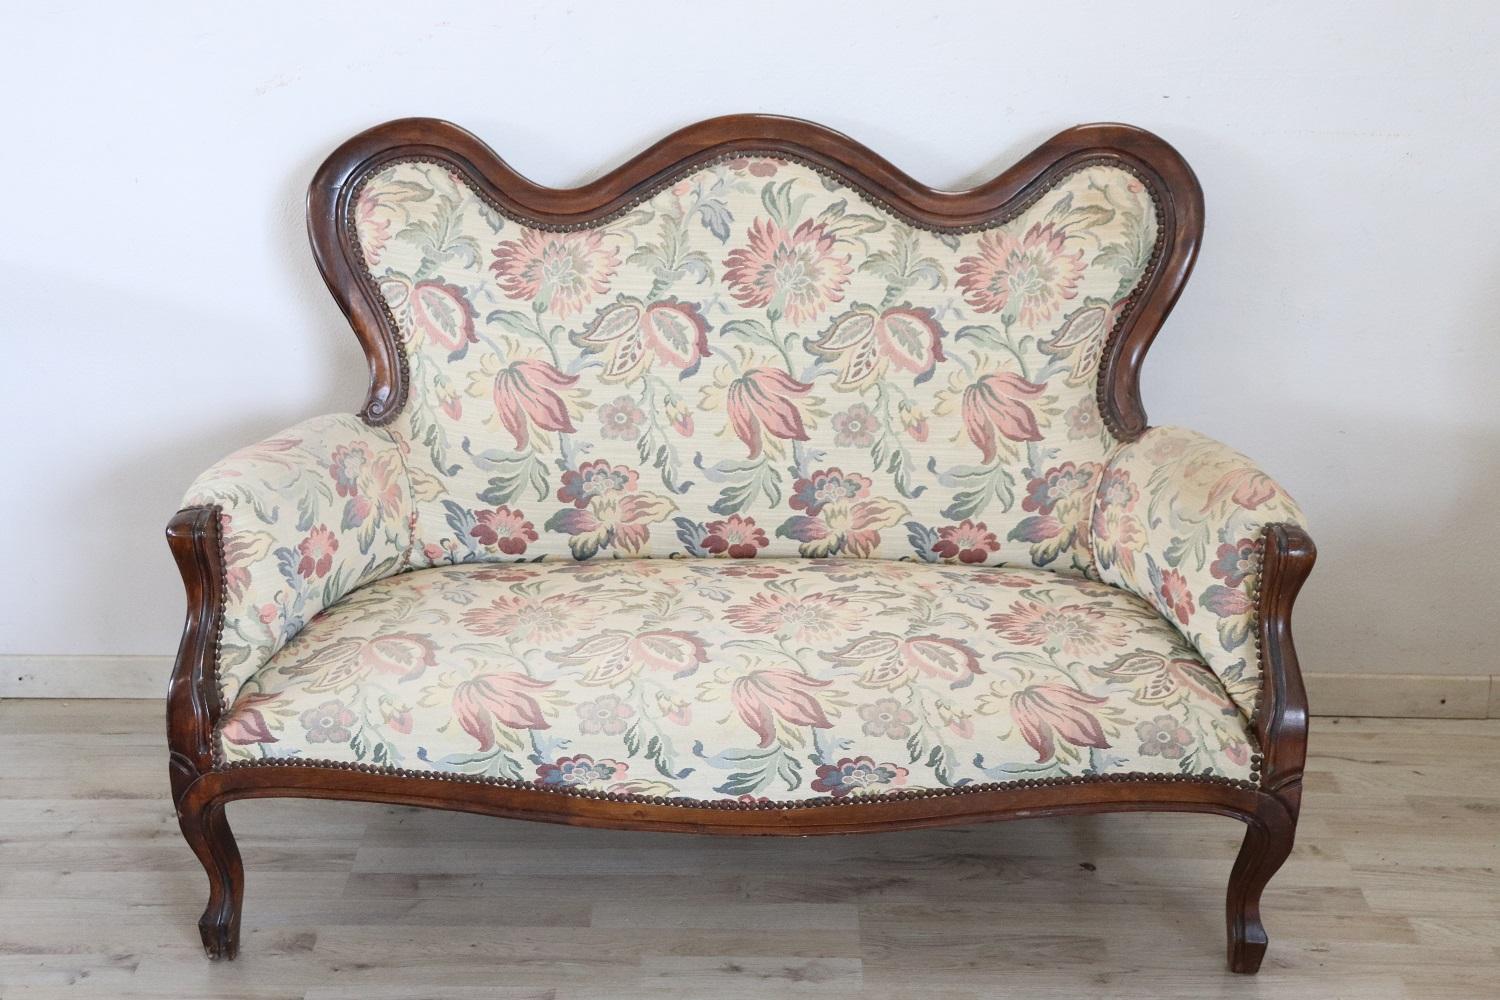 Rare ensemble complet de salon de luxe italien de style Louis Philippe des années 1930 comprenant :
1 canapé
1 fauteuil

Ensemble de salon raffiné en bois de noyer. Le salon provient d'une importante villa italienne et embellit la pièce pour la